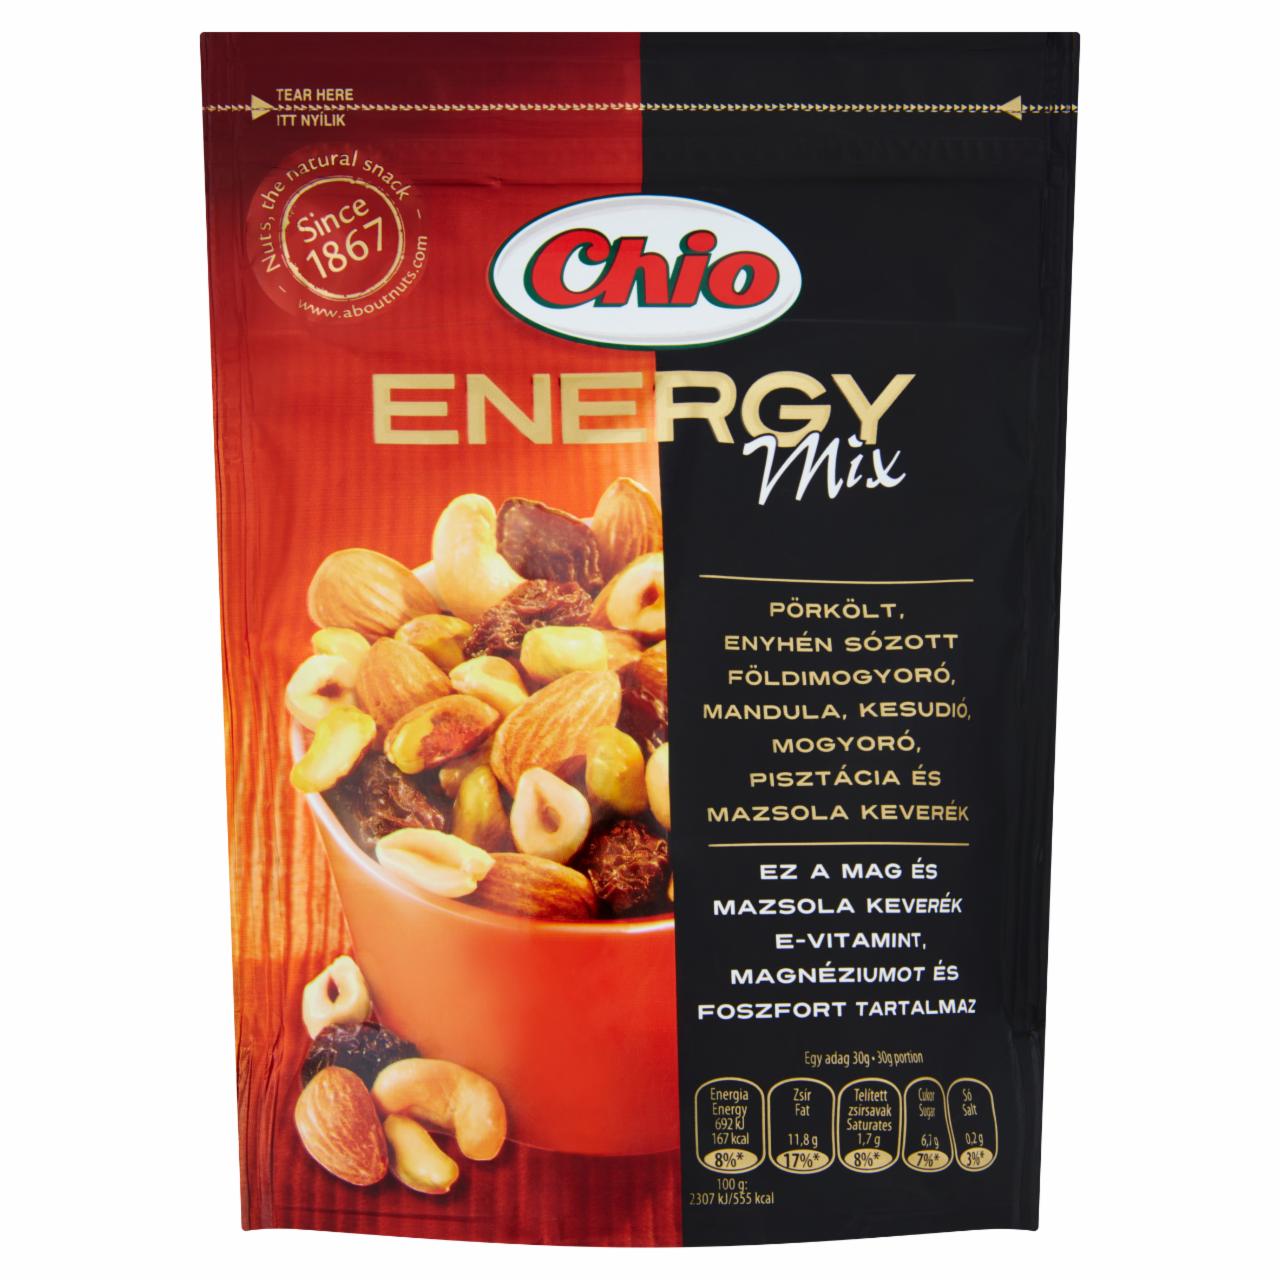 Képek - Chio Energy Mix pörkölt, enyhén sózott magok és mazsola keveréke 125 g